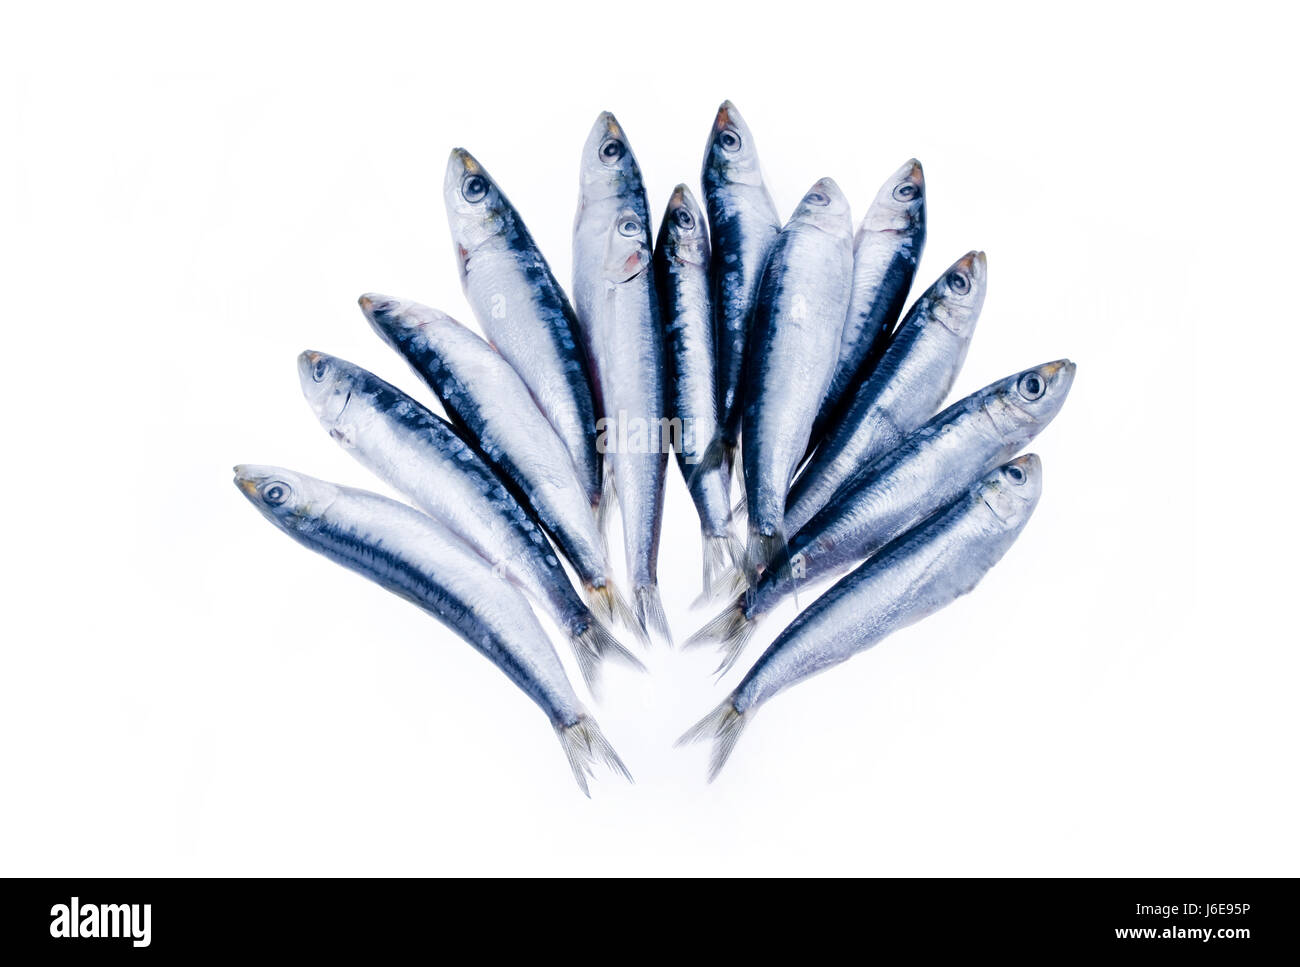 Cibo aliment freschezza del pesce crudo dolce sardina acqua salata oceano mare acqua freschi Foto Stock